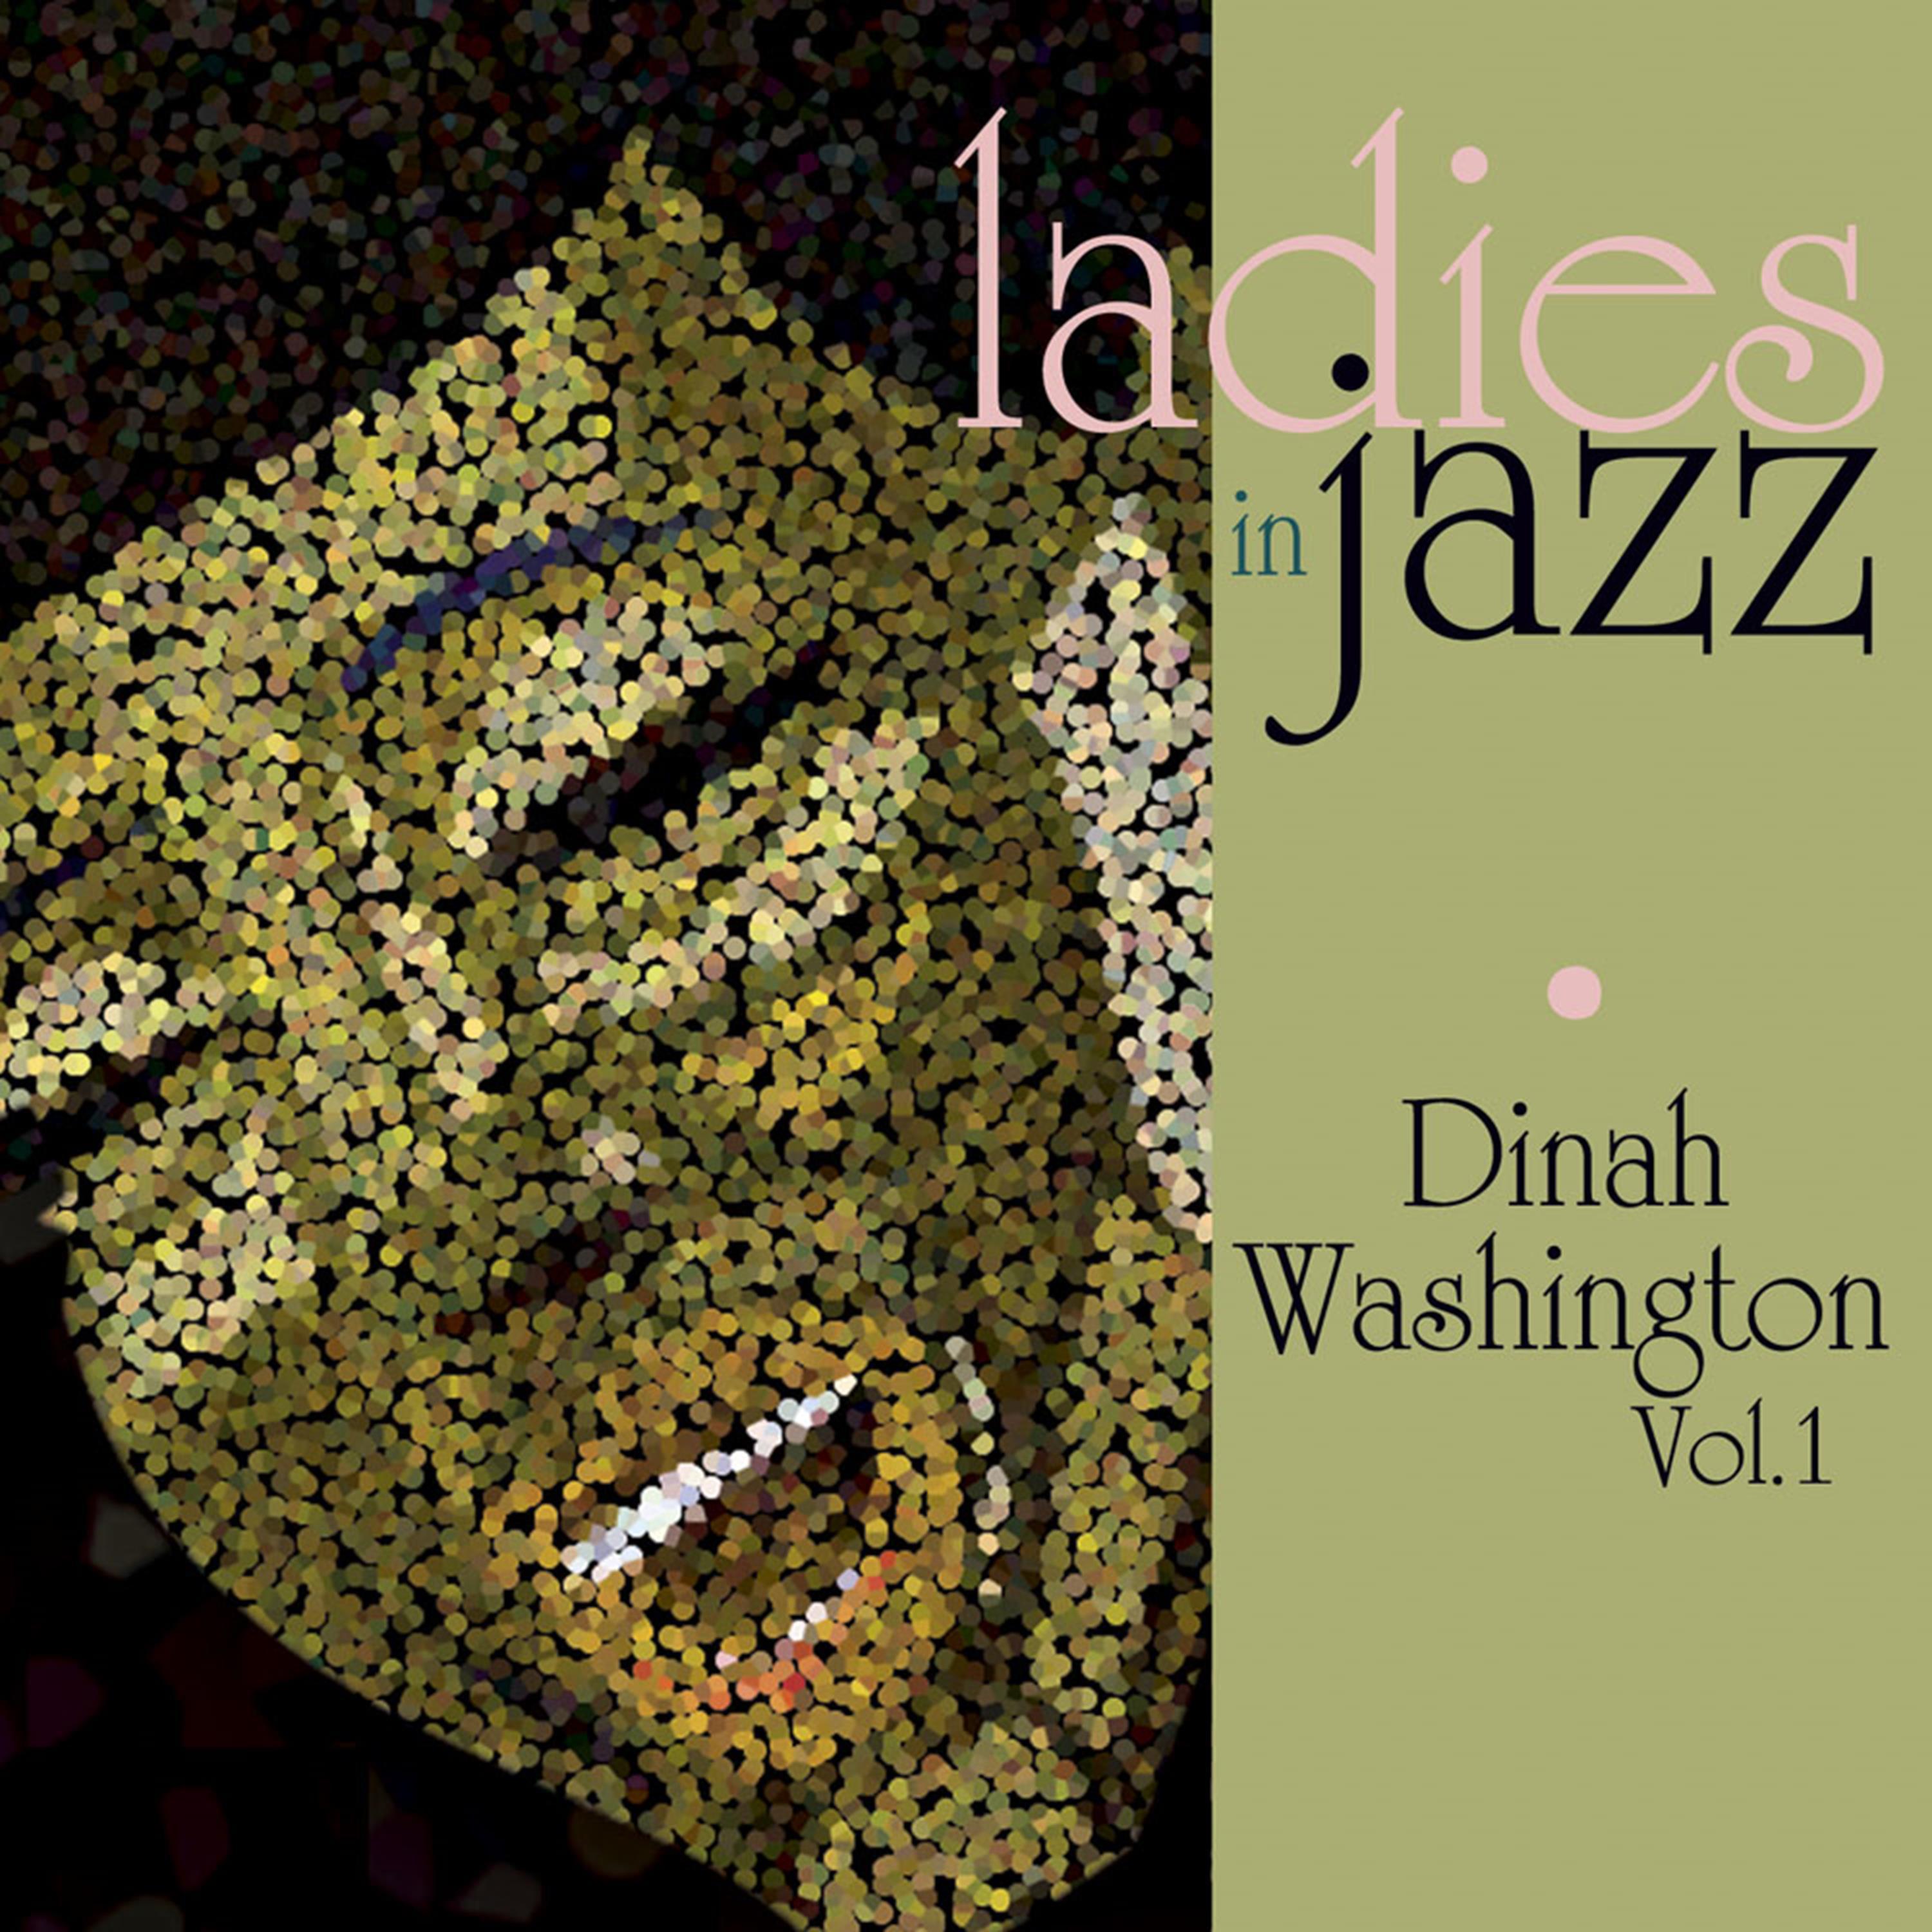 Ladies in Jazz - Dinah Washington, Vol. 1